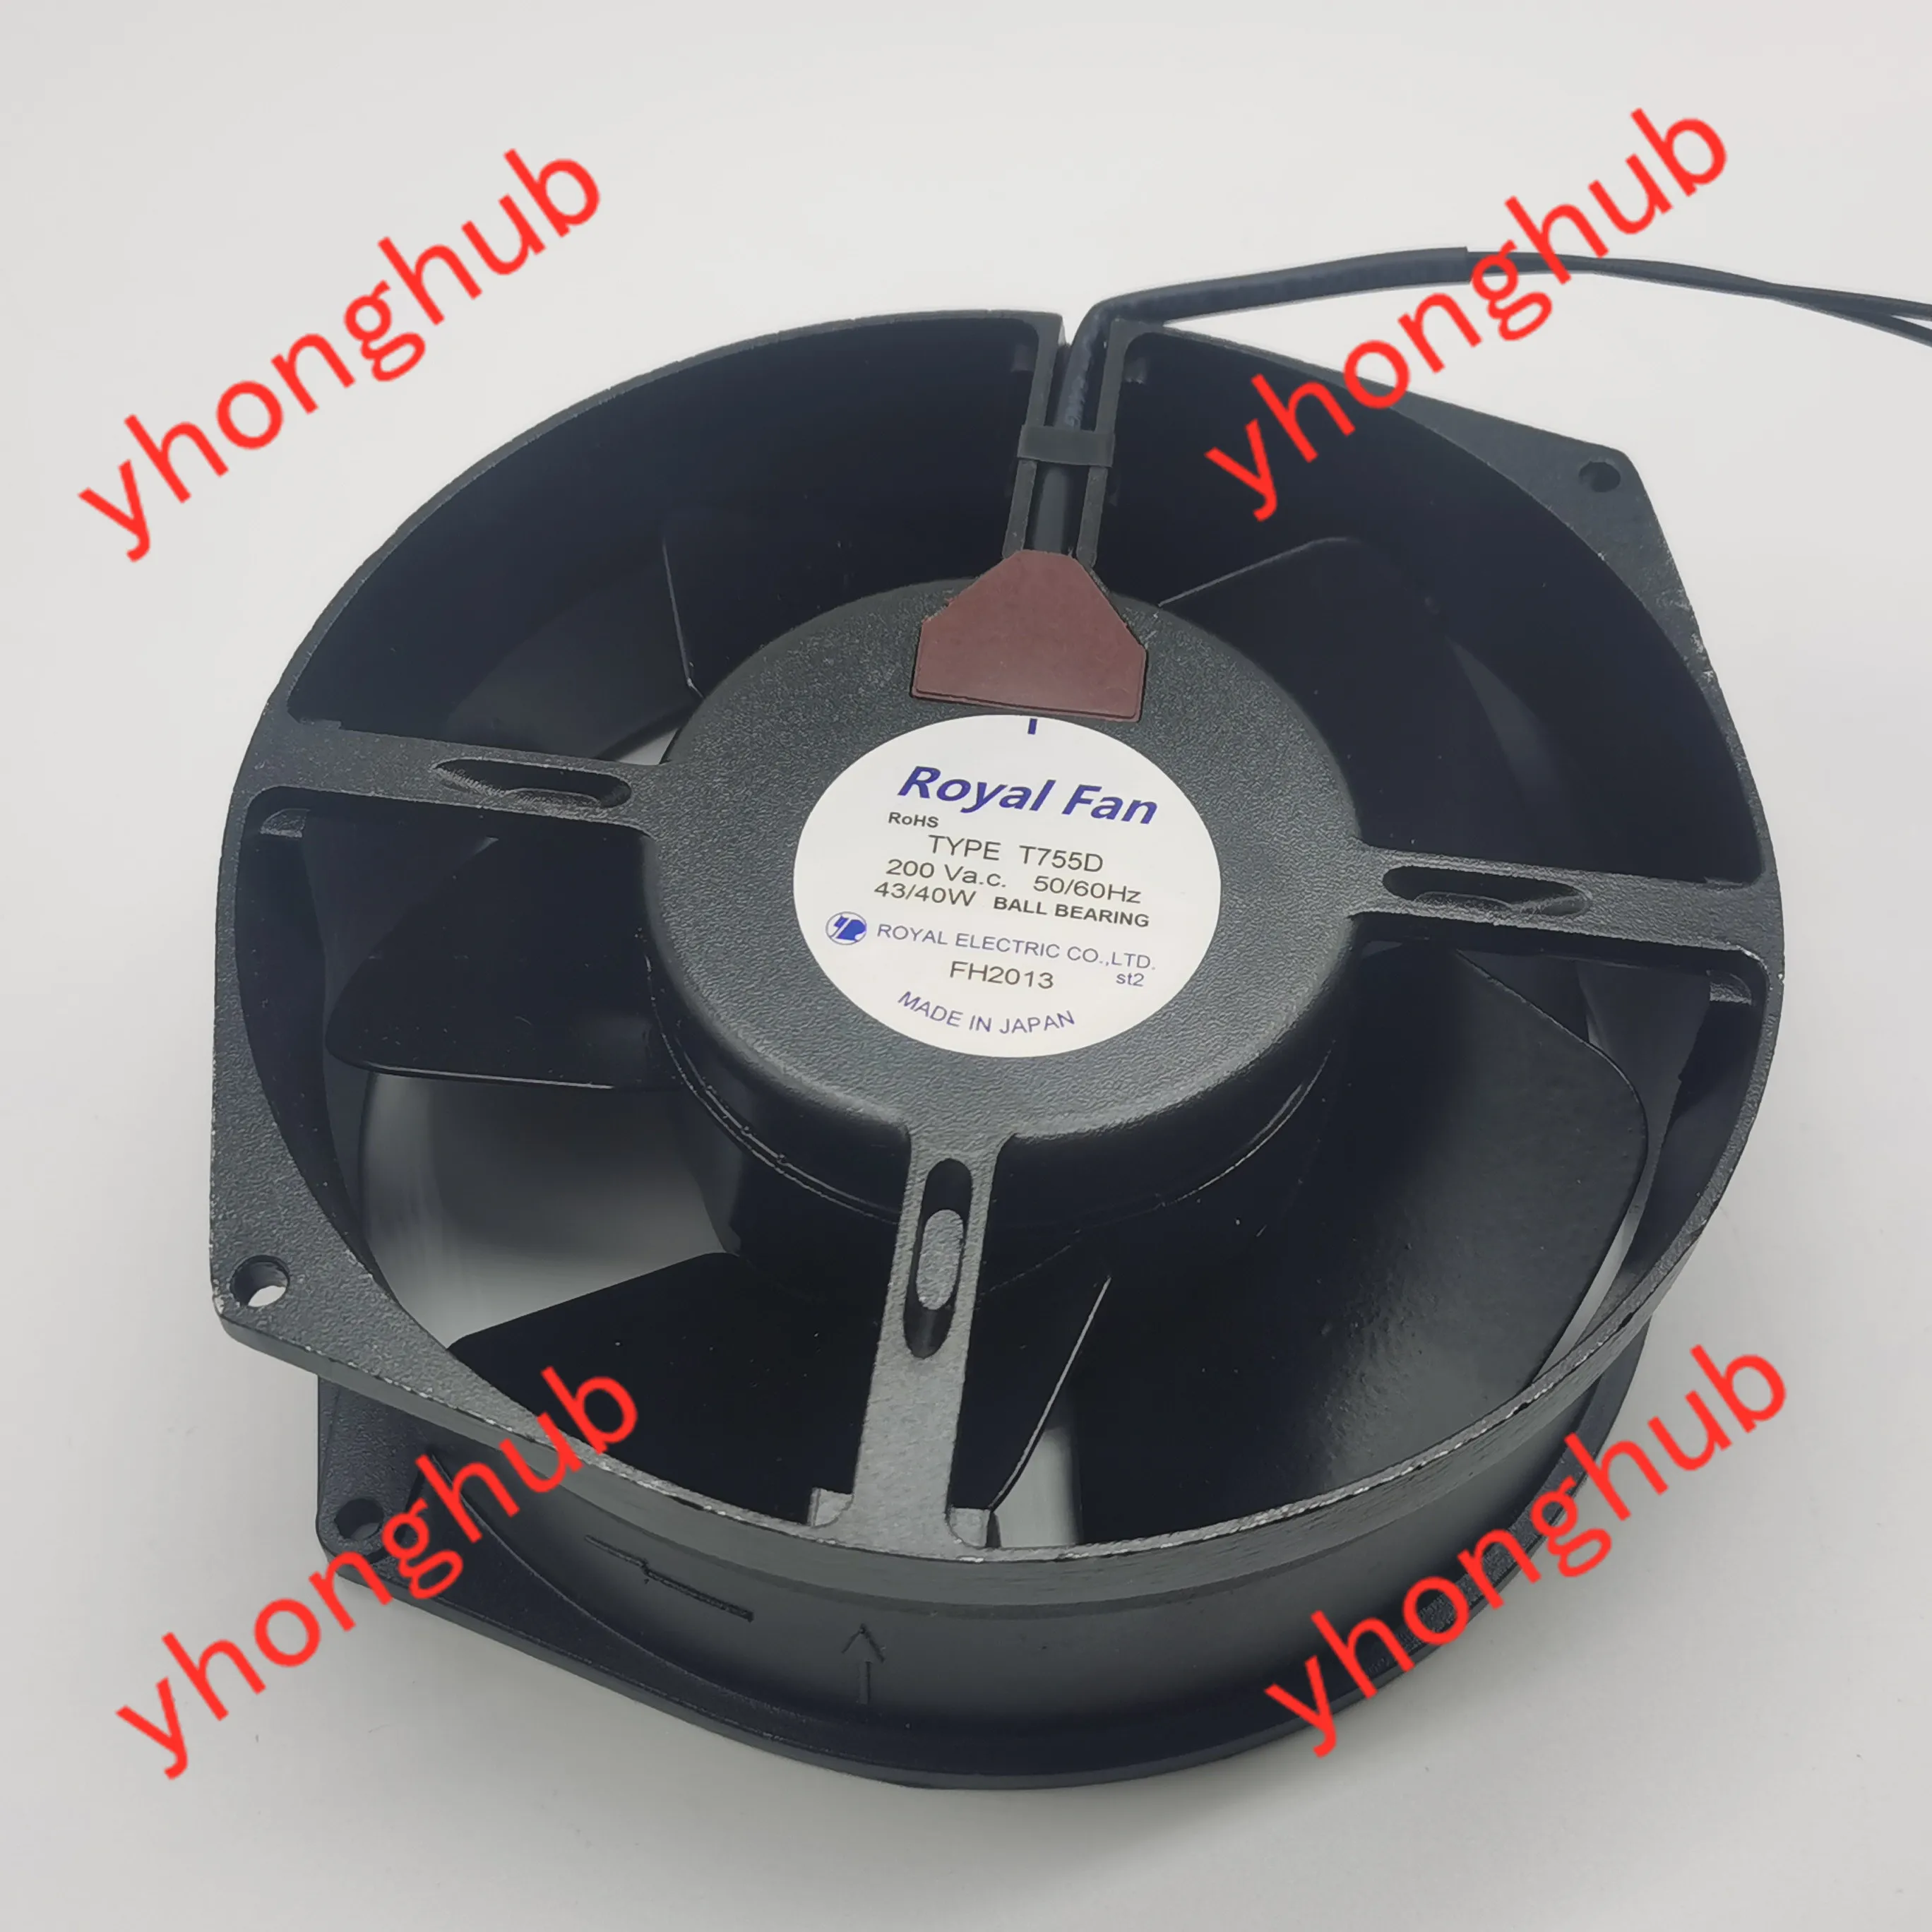 

Royal Fan T755D AC 200V 43/40W 172x150x55mm 2-Wire Server Cooling Fan